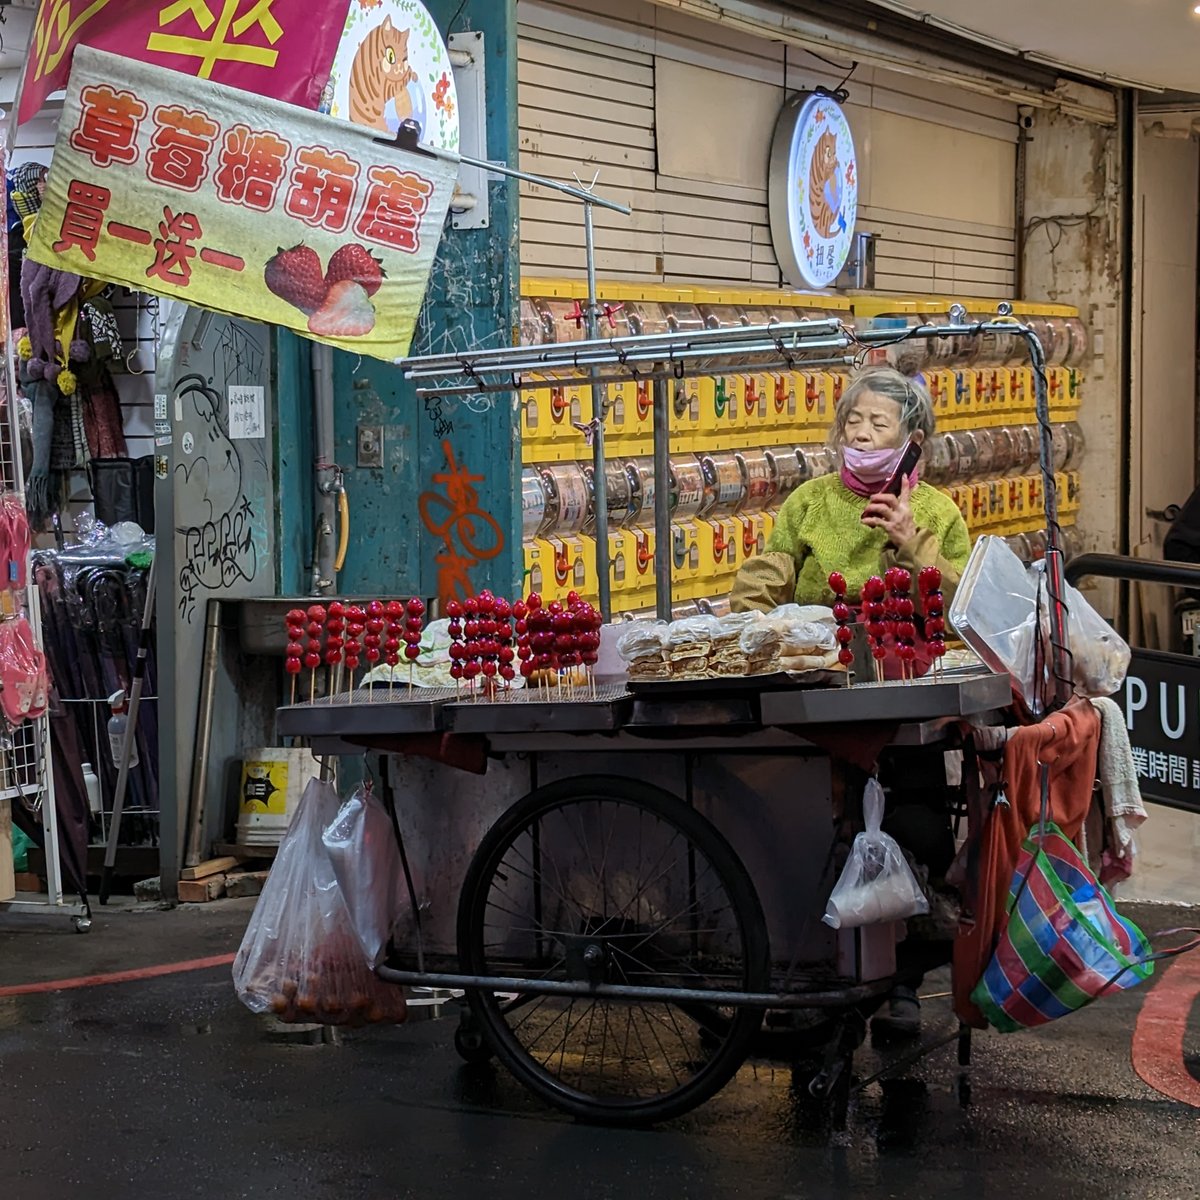 ★看影片：https://t.co/hw2y2fYOys (一中街夜市、一中夜市) 的糖葫蘆攤販。 (タンフールー、Sugar coated fruit stick) Taichung Yizhong Street Night Market